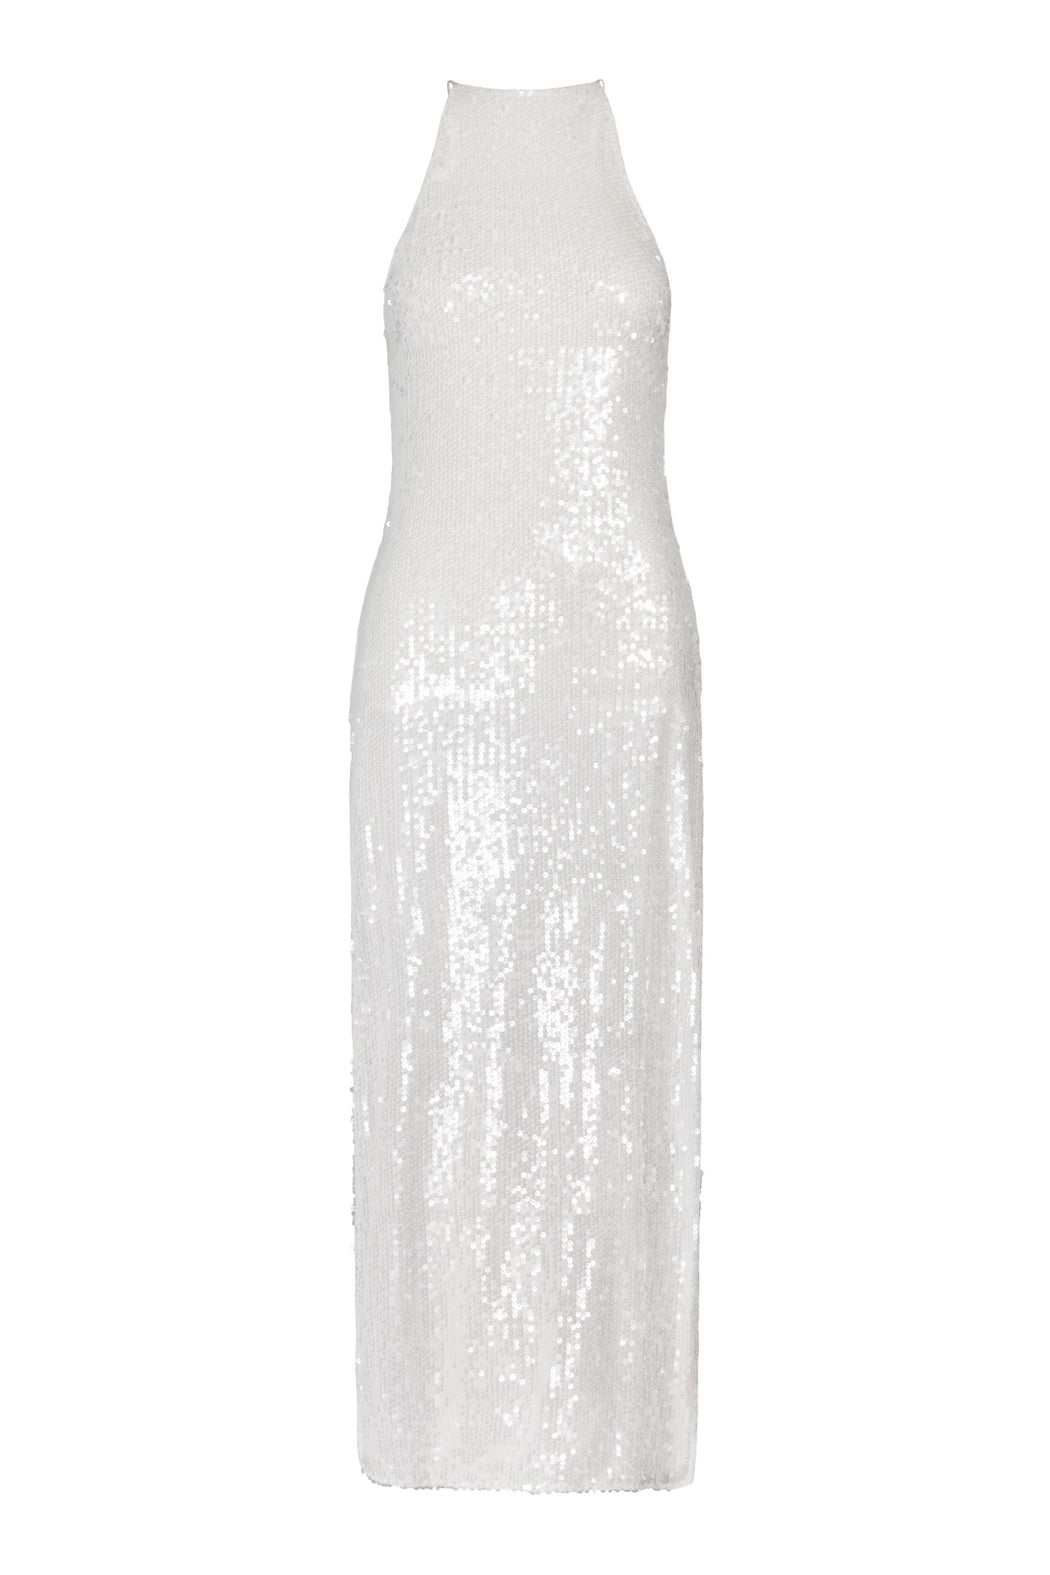 Envelope1976 Famous dress - Leftover fabric Dress White